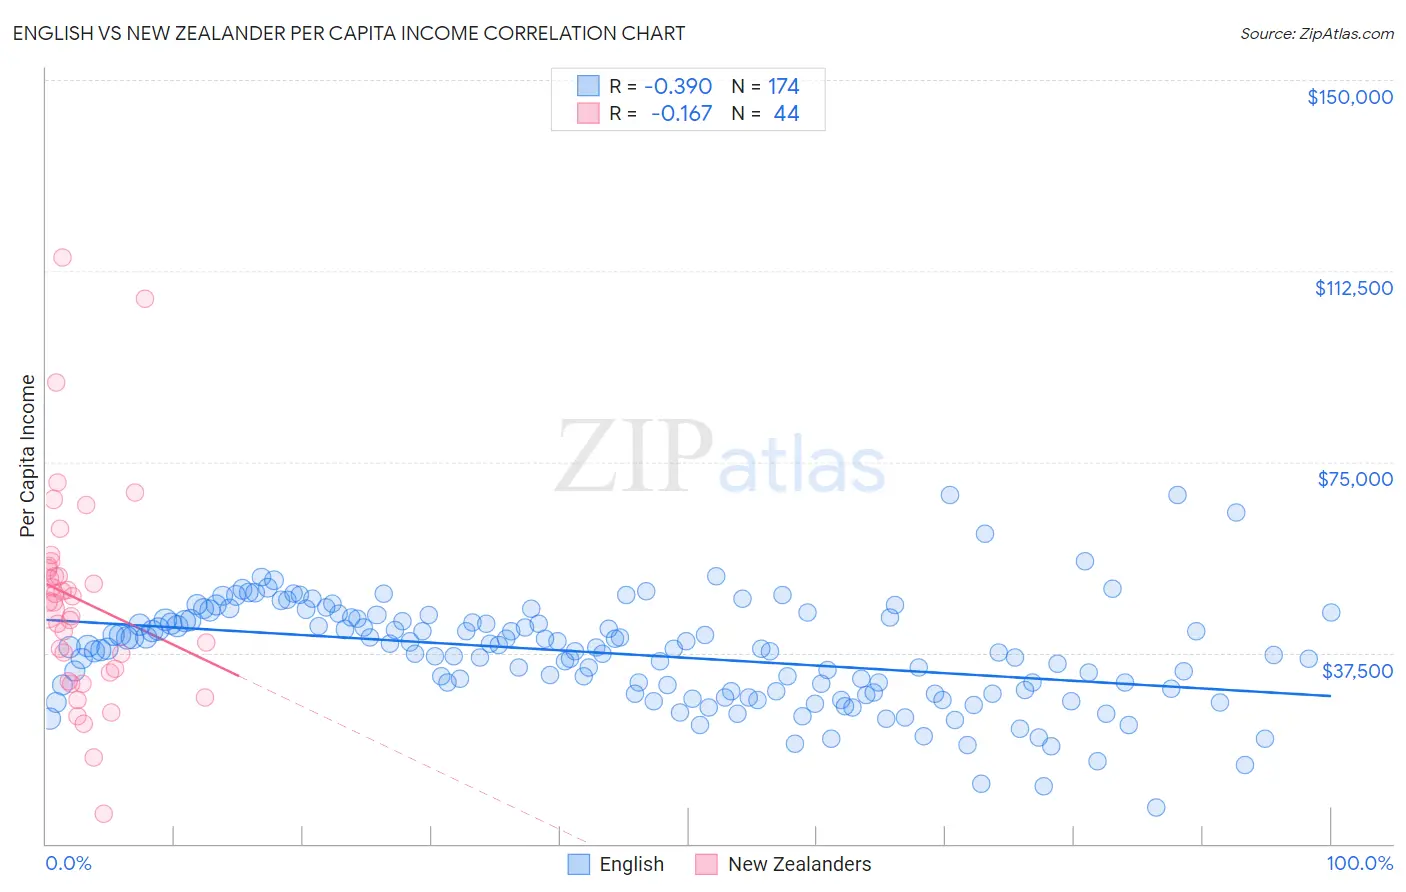 English vs New Zealander Per Capita Income